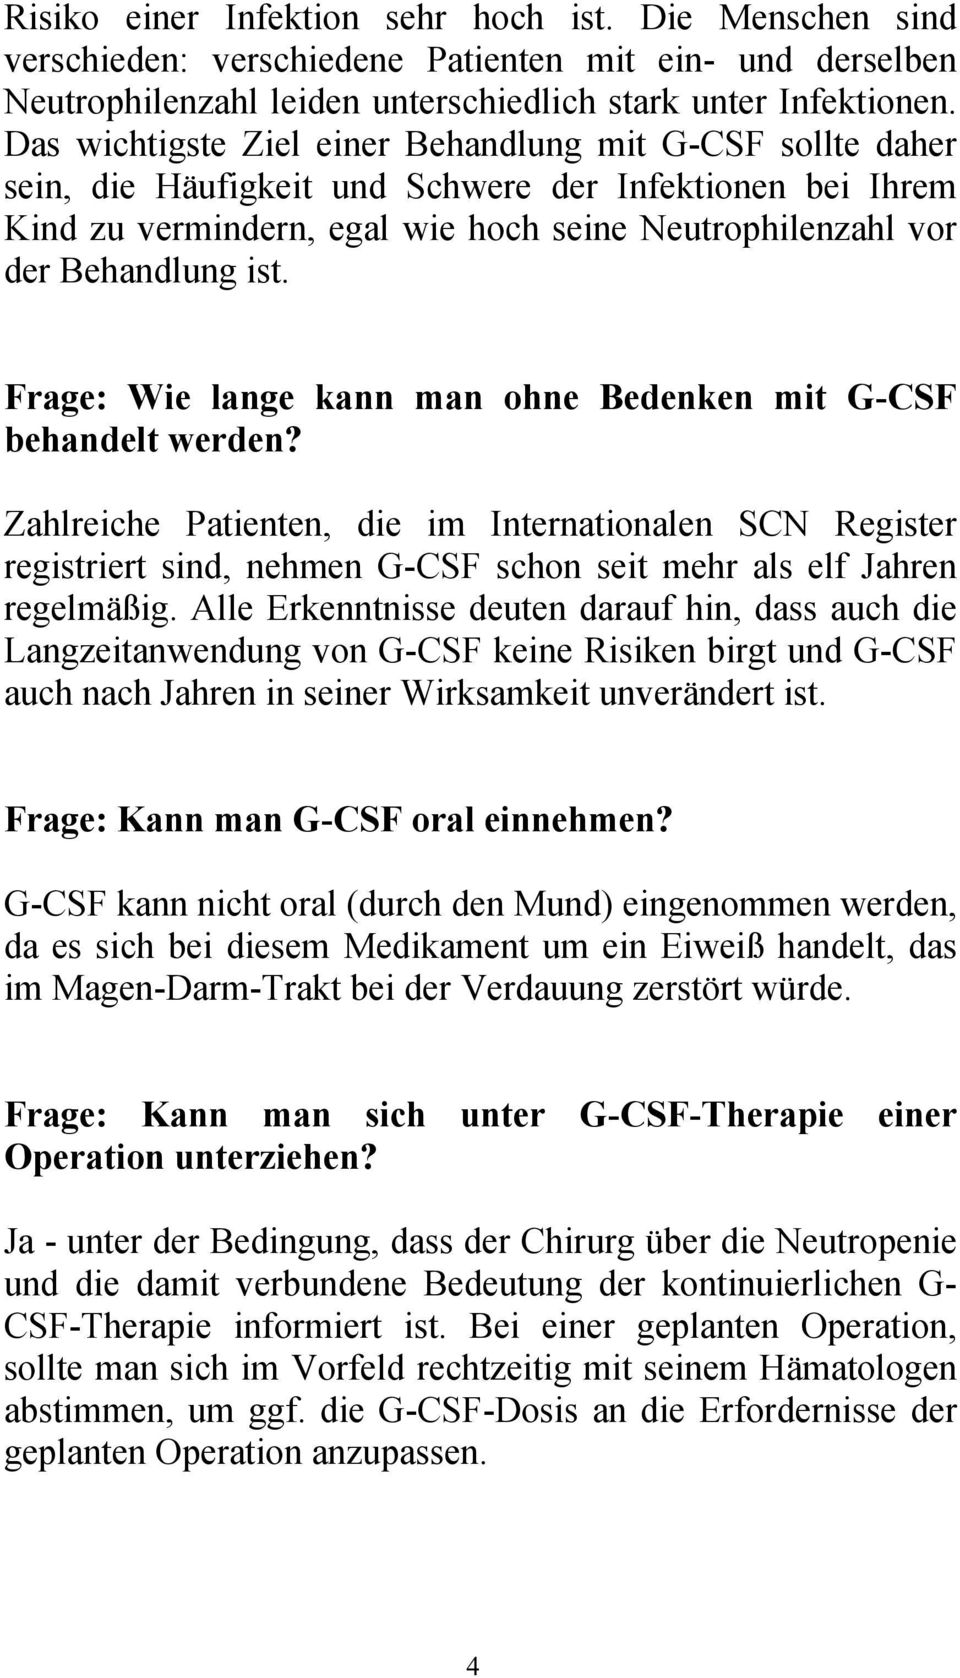 Frage: Wie lange kann man ohne Bedenken mit G-CSF behandelt werden? Zahlreiche Patienten, die im Internationalen SCN Register registriert sind, nehmen G-CSF schon seit mehr als elf Jahren regelmäßig.